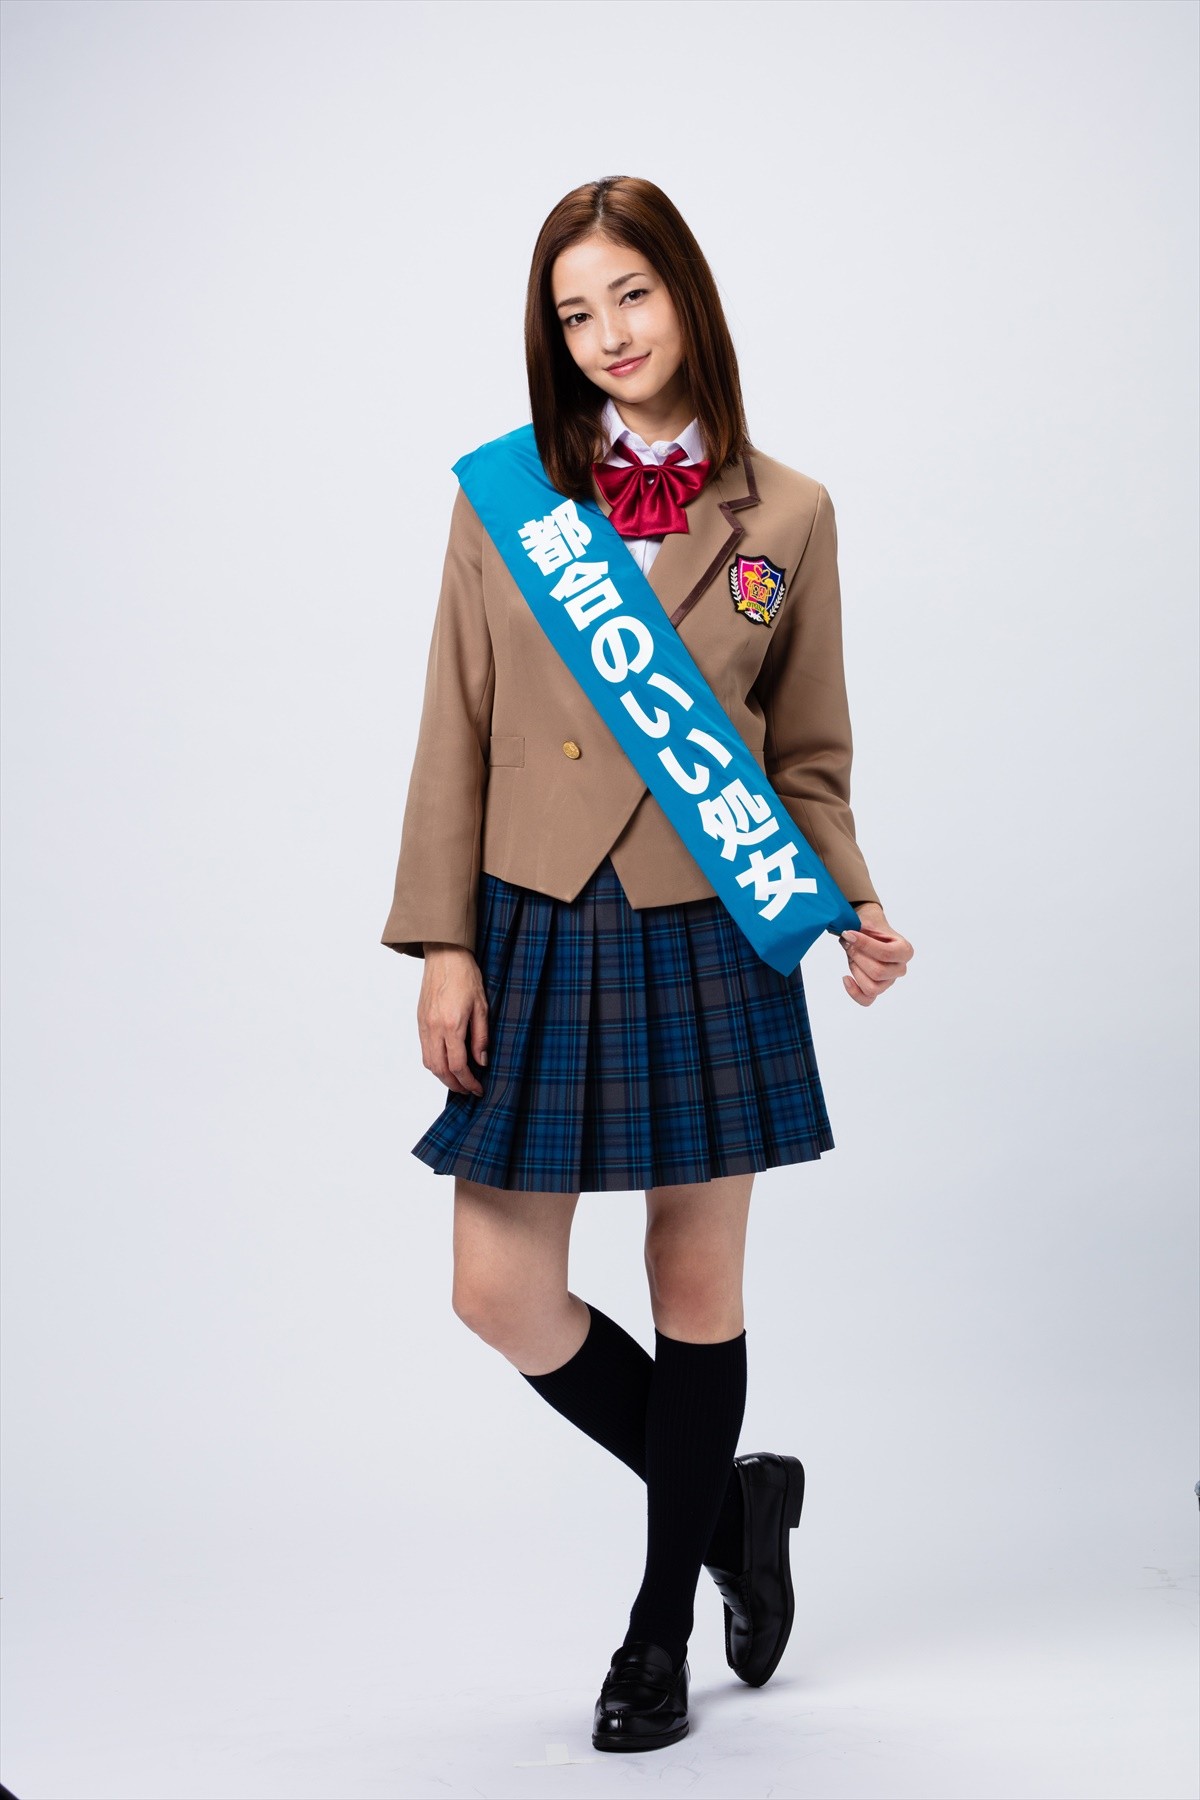 黒木メイサ、三浦春馬主演『オトナ高校』で制服姿をドラマ初披露 32歳処女高校生役に